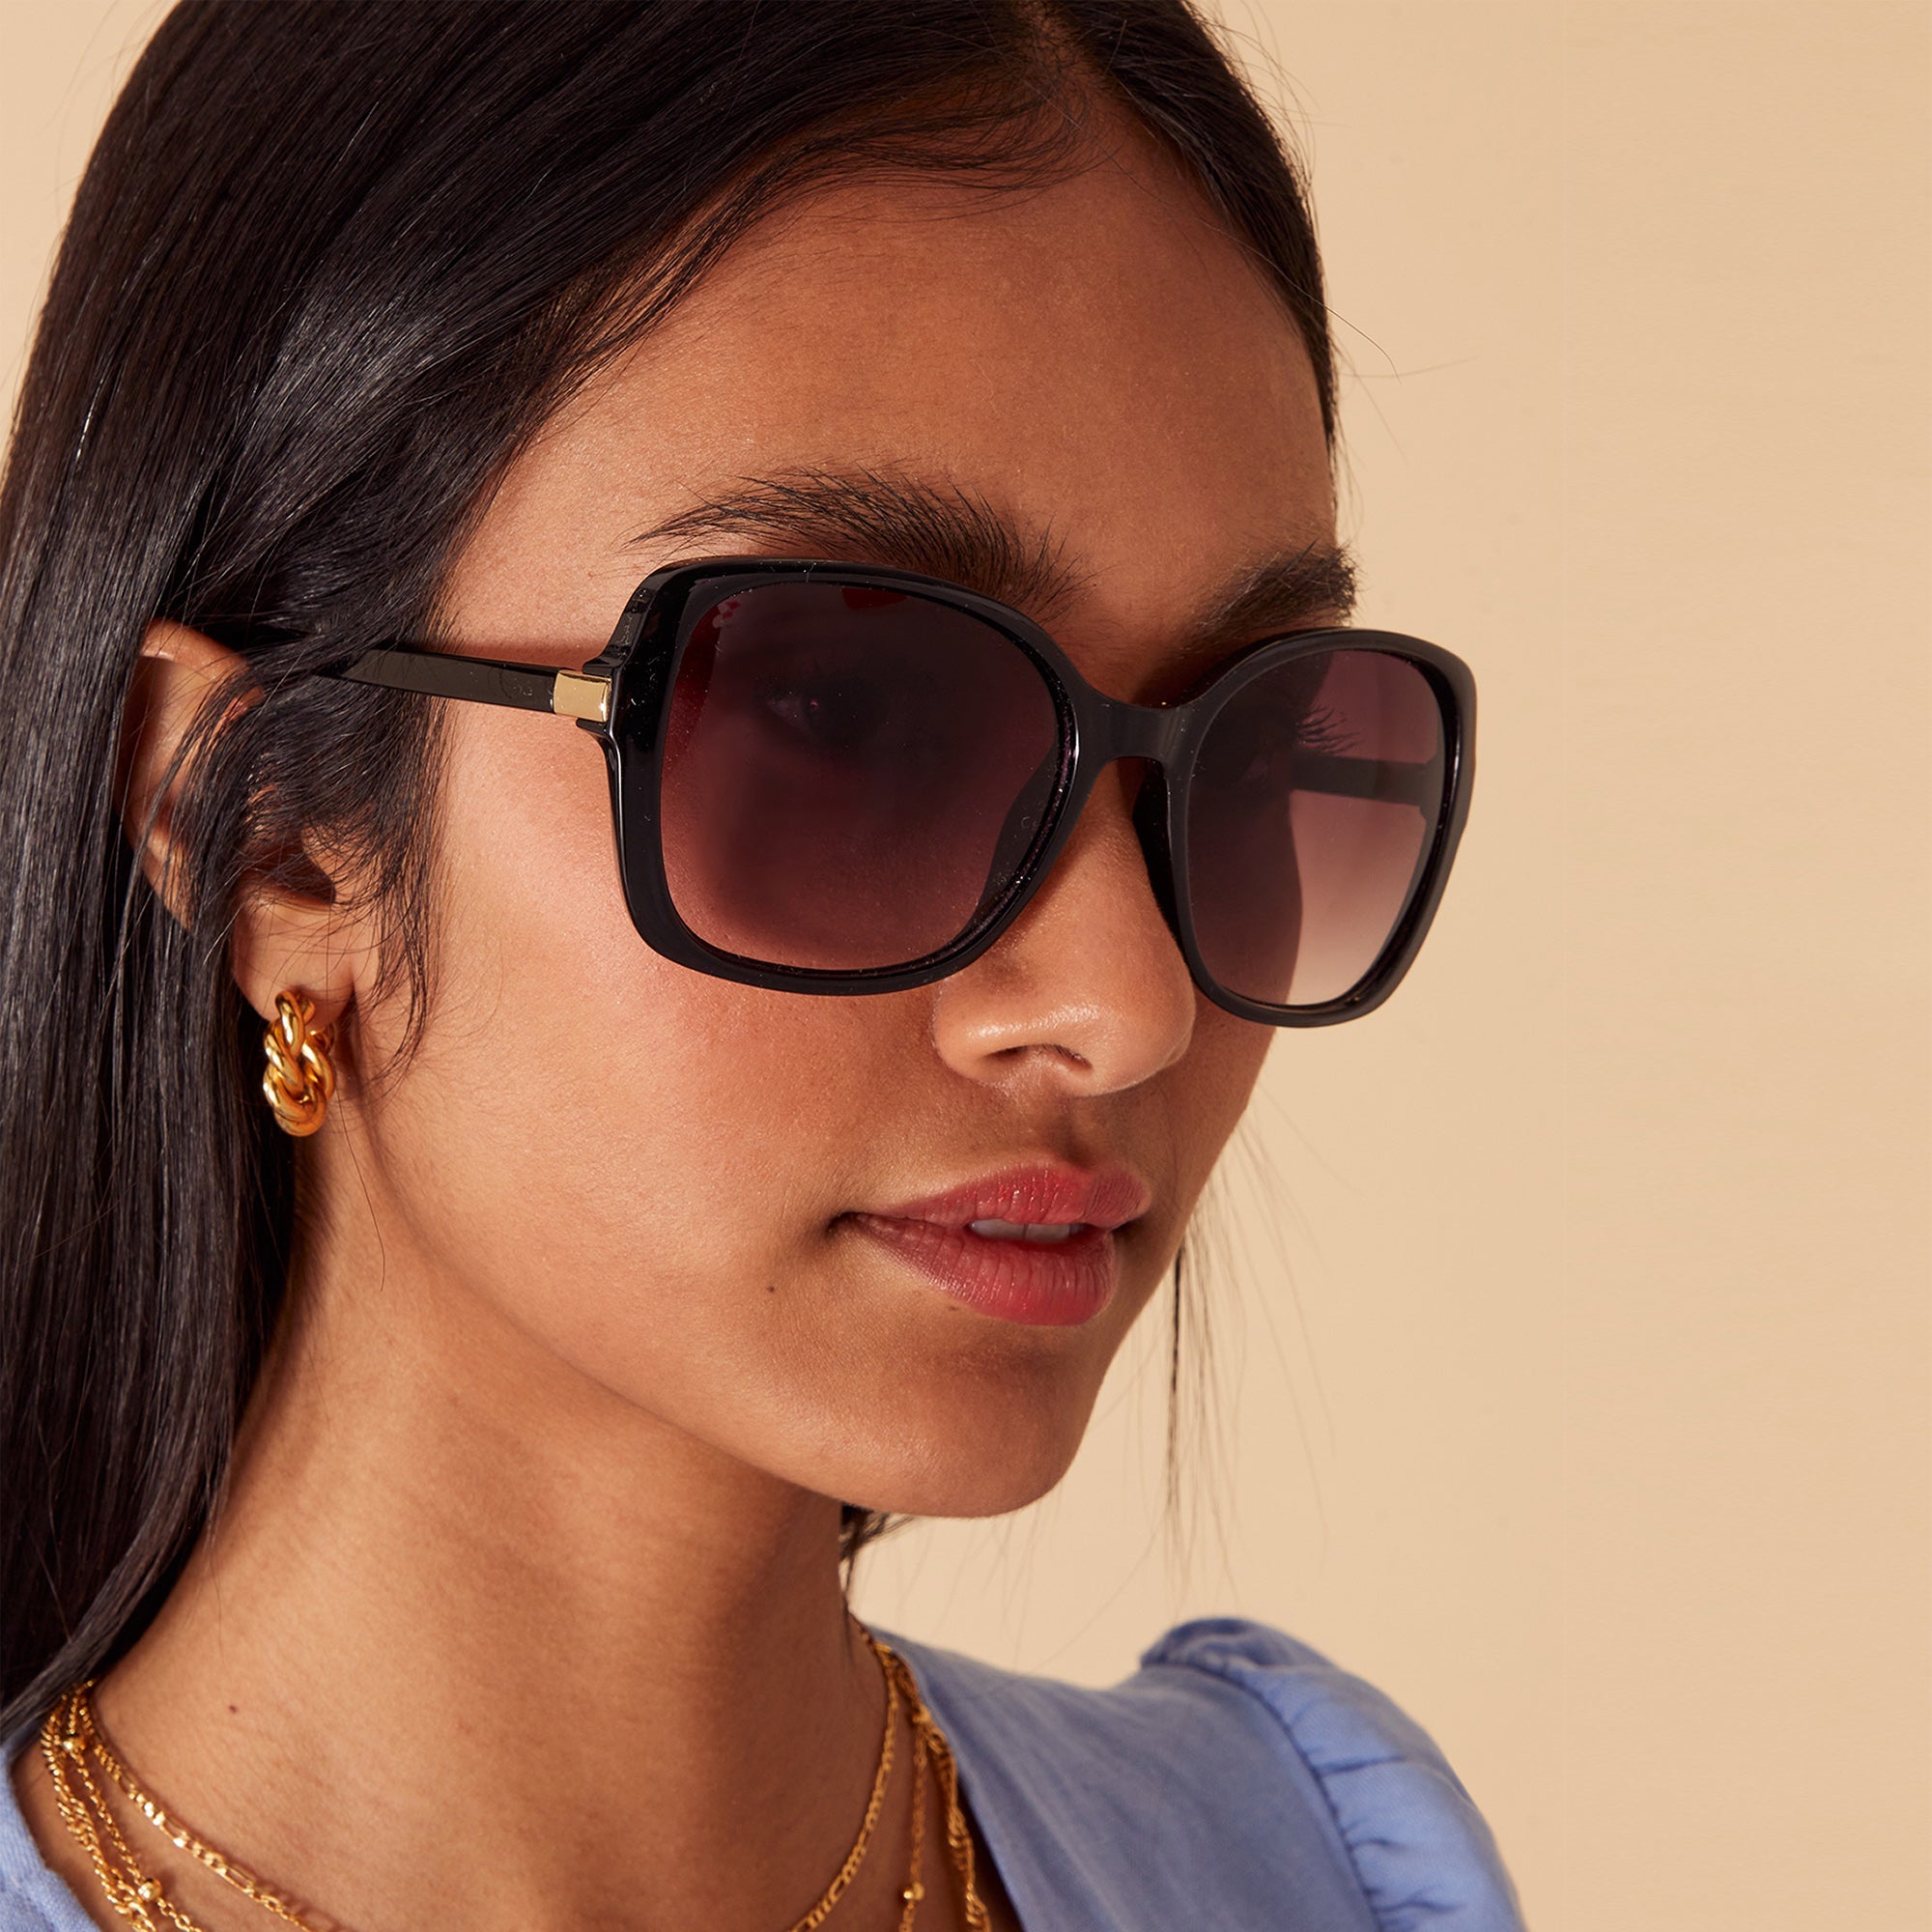 Accessorize London Women's Oversized Square Black Sunglasses